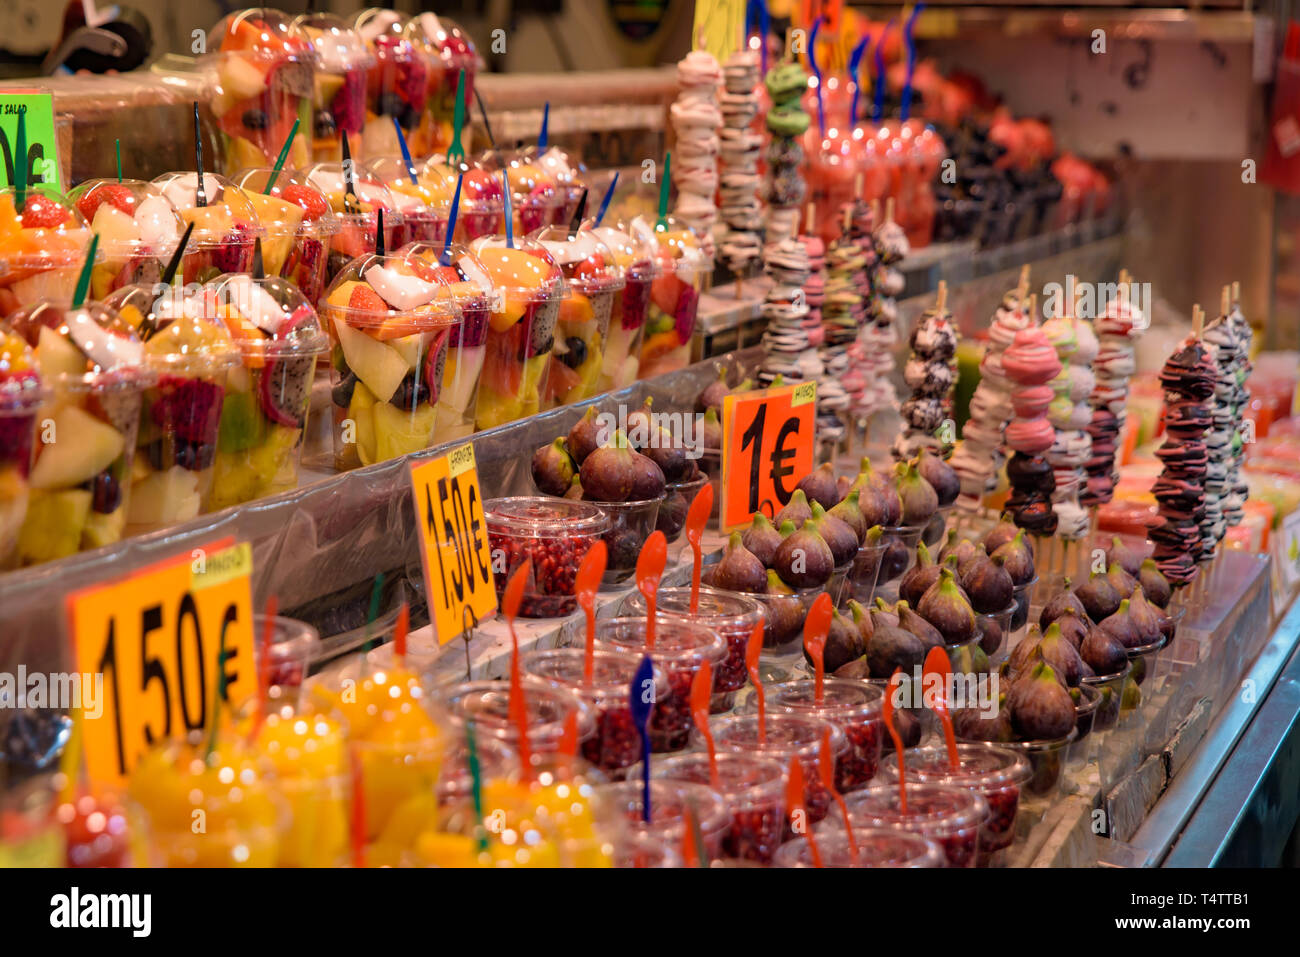 Les échoppes de fruits Mercat de Sant Josep de la Boqueria, un marché typiquement espagnol à Barcelone, Espagne Banque D'Images